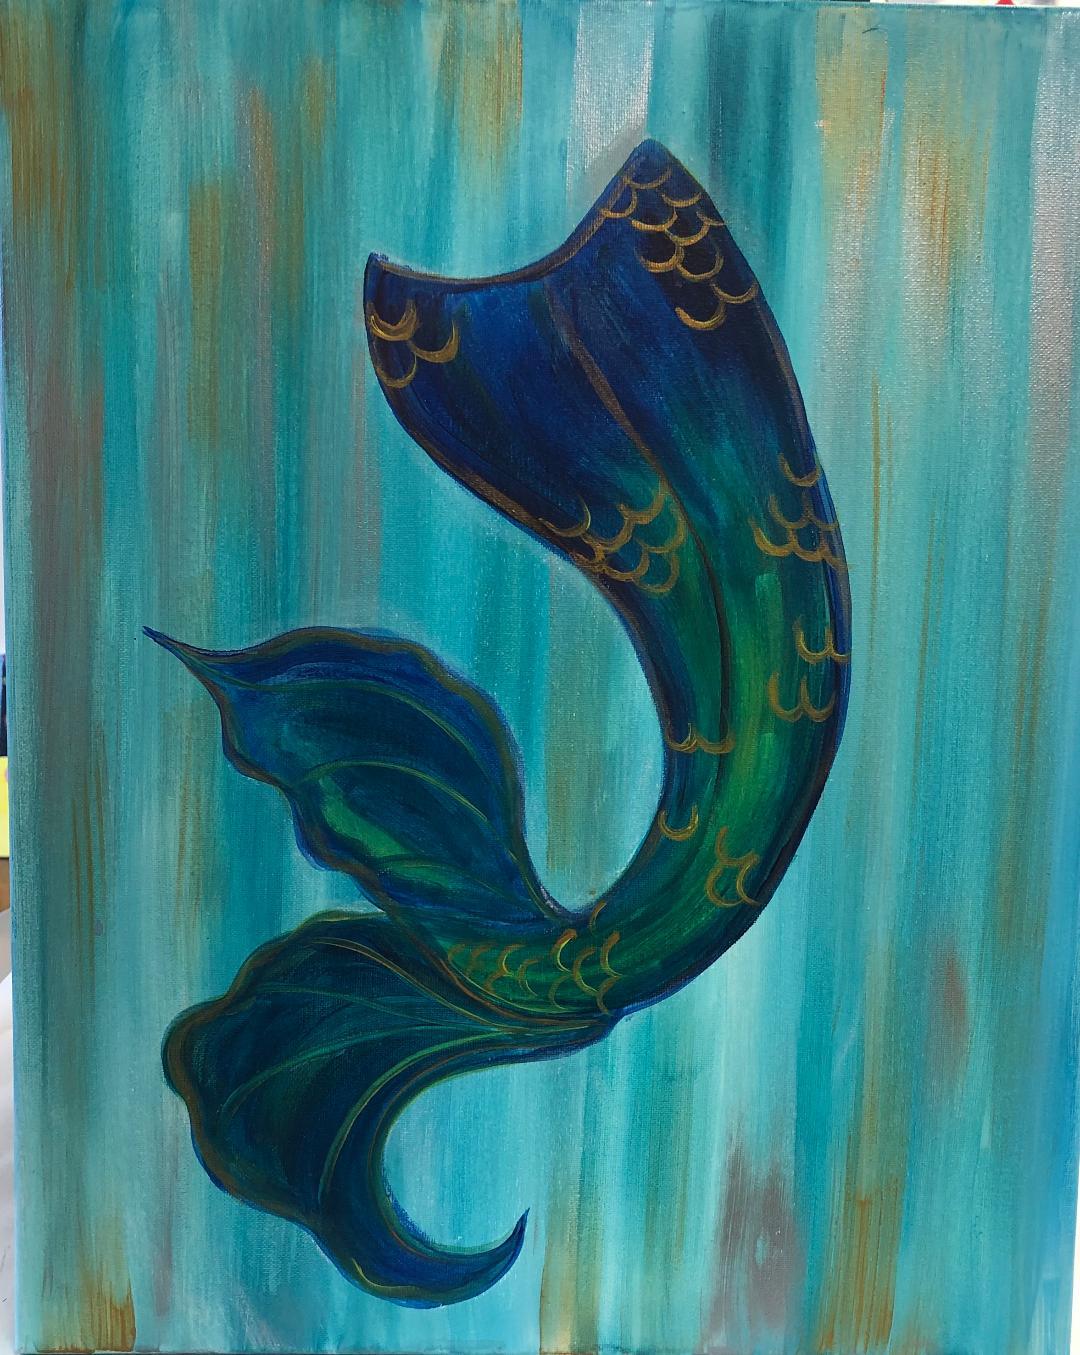 Mermaid Tail - Brush Tips Art Studio